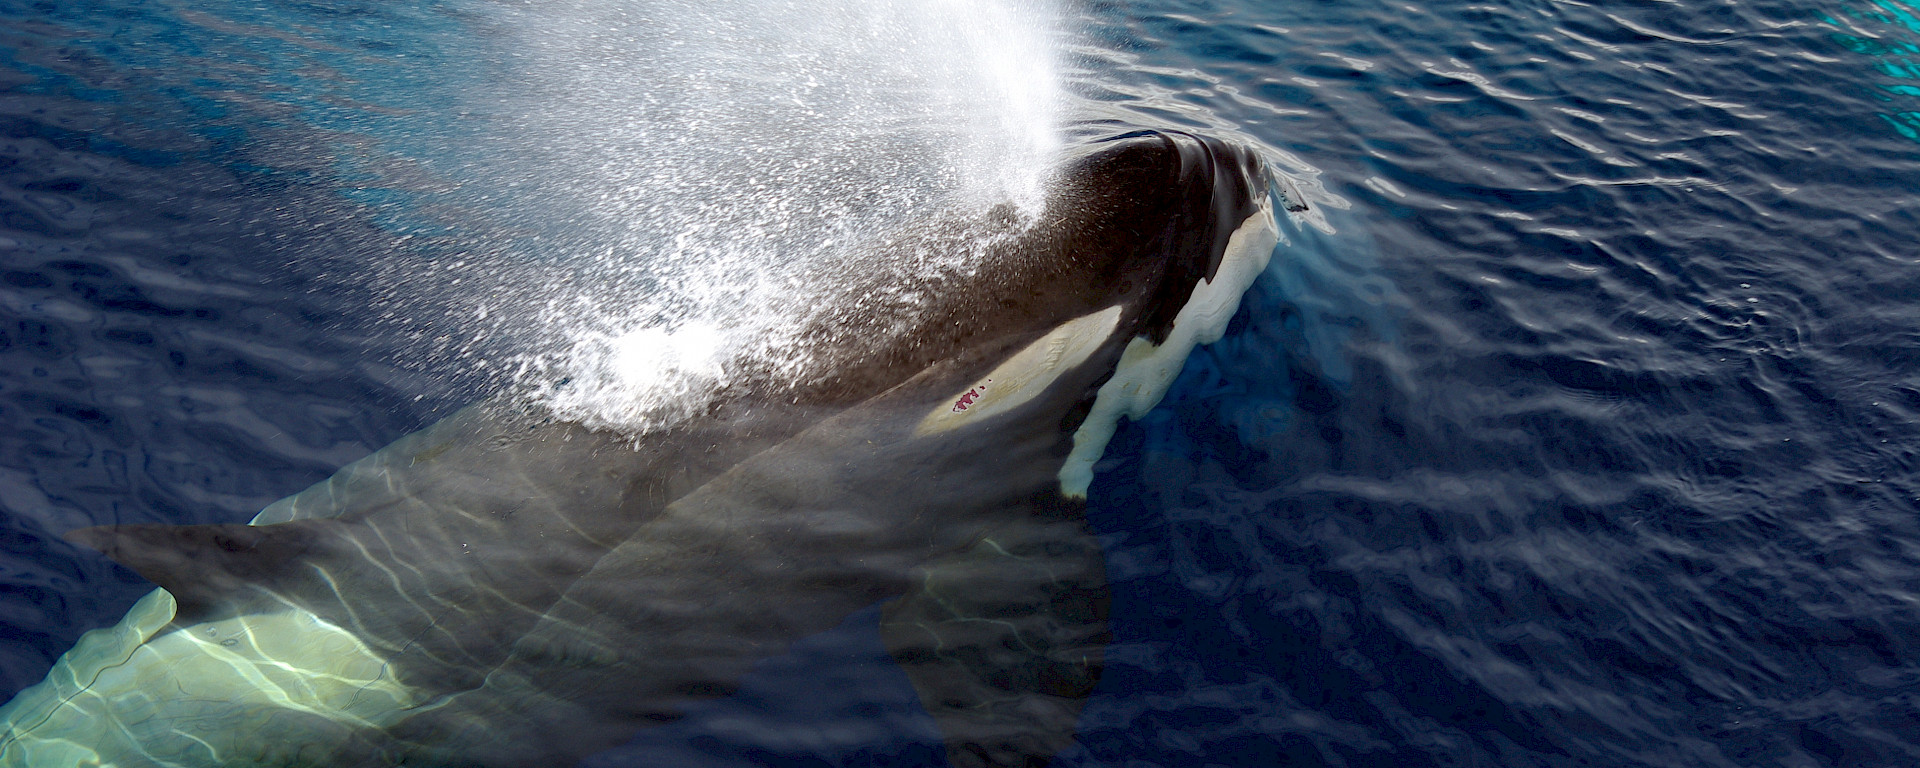 An orca surfaces near the Aurora Australis